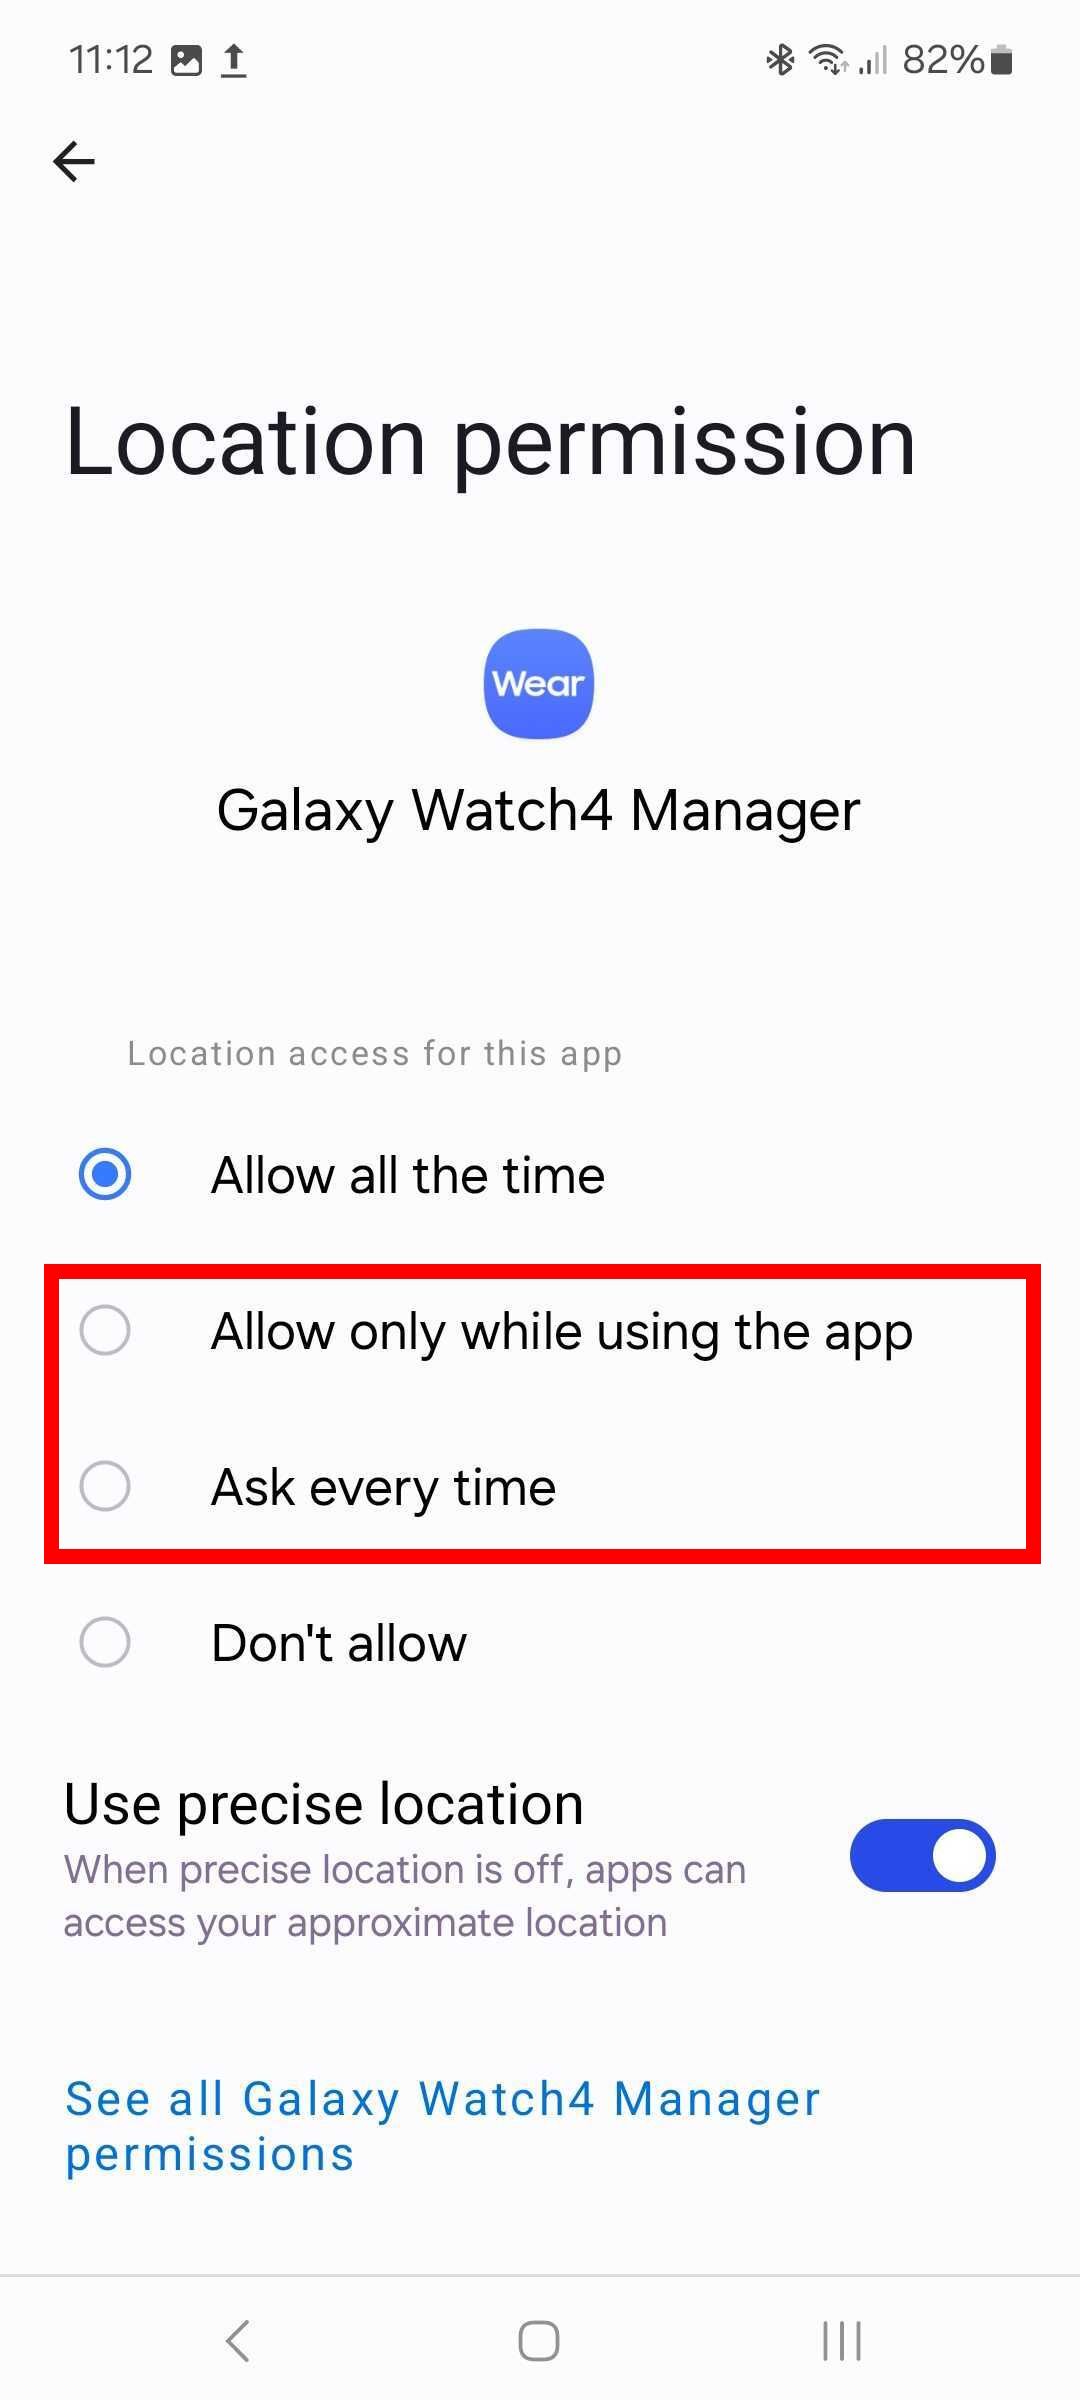 Contorno de retângulo vermelho destacando as permissões de localização para o aplicativo Galaxy Watch4 Manager